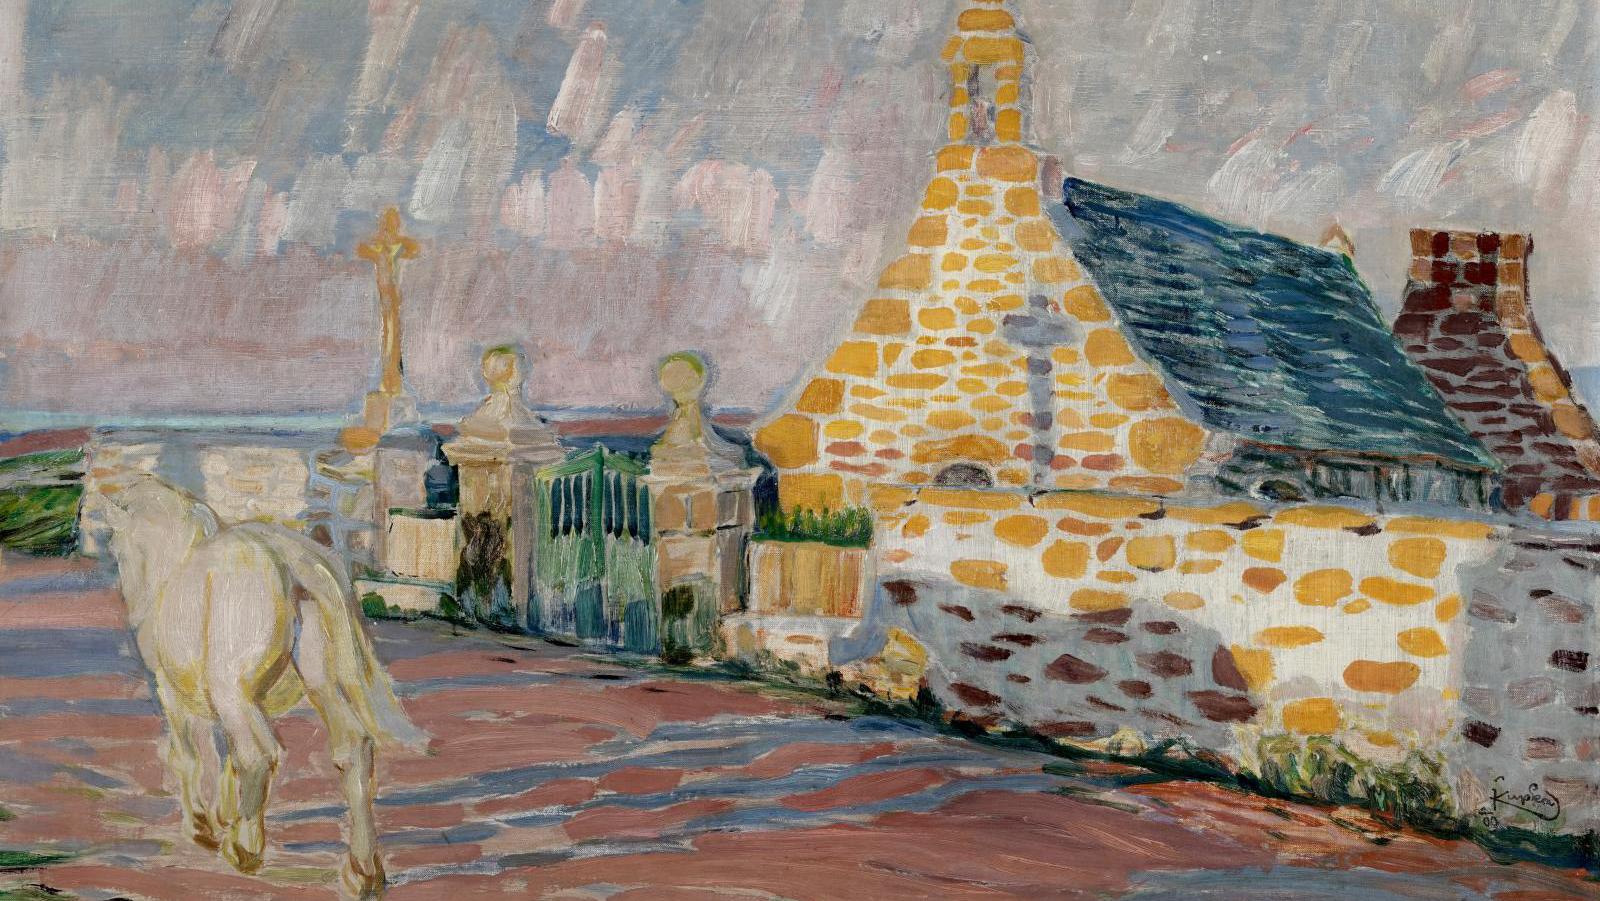 Frantisek Kupka (1871-1957), Le Cheval blanc, la chapelle Sainte-Anne devant la mer, Trégastel (The White Horse, Saint Ann’s Chapel before the Sea, Trégastel), 1909, oil on canvas, signed and dated lower right, 54.5 x 81.5 cm (21.46 x 32.09 in). Estimate: €200,000/300,000